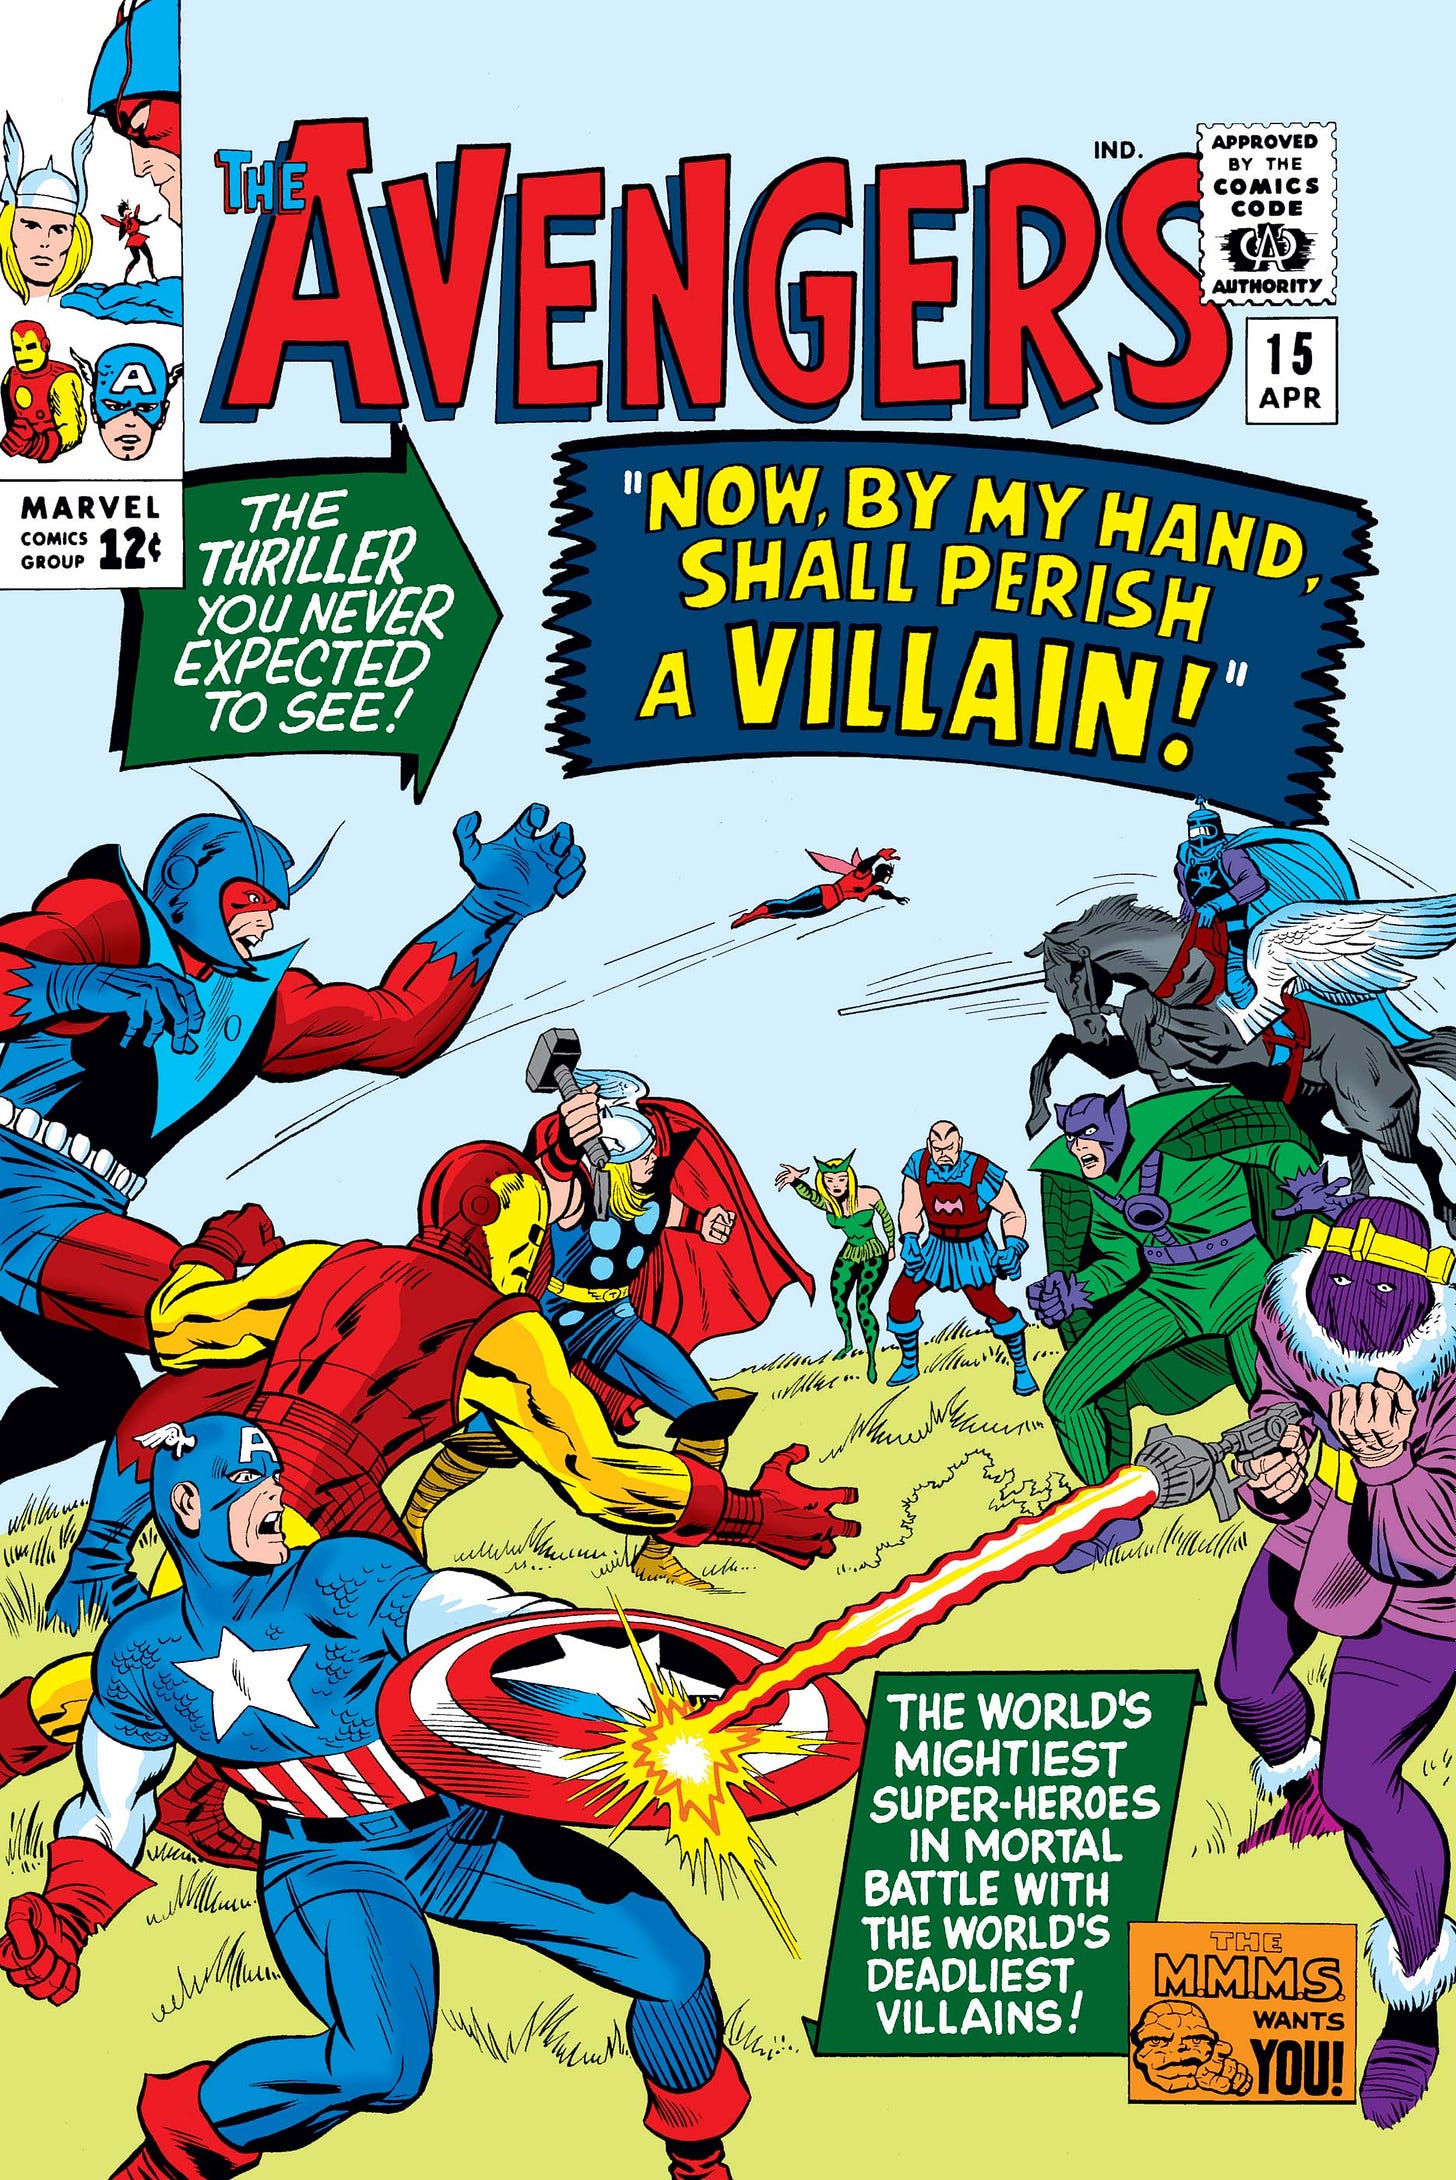 Avengers (1963) #15 | Comic Issues | Marvel